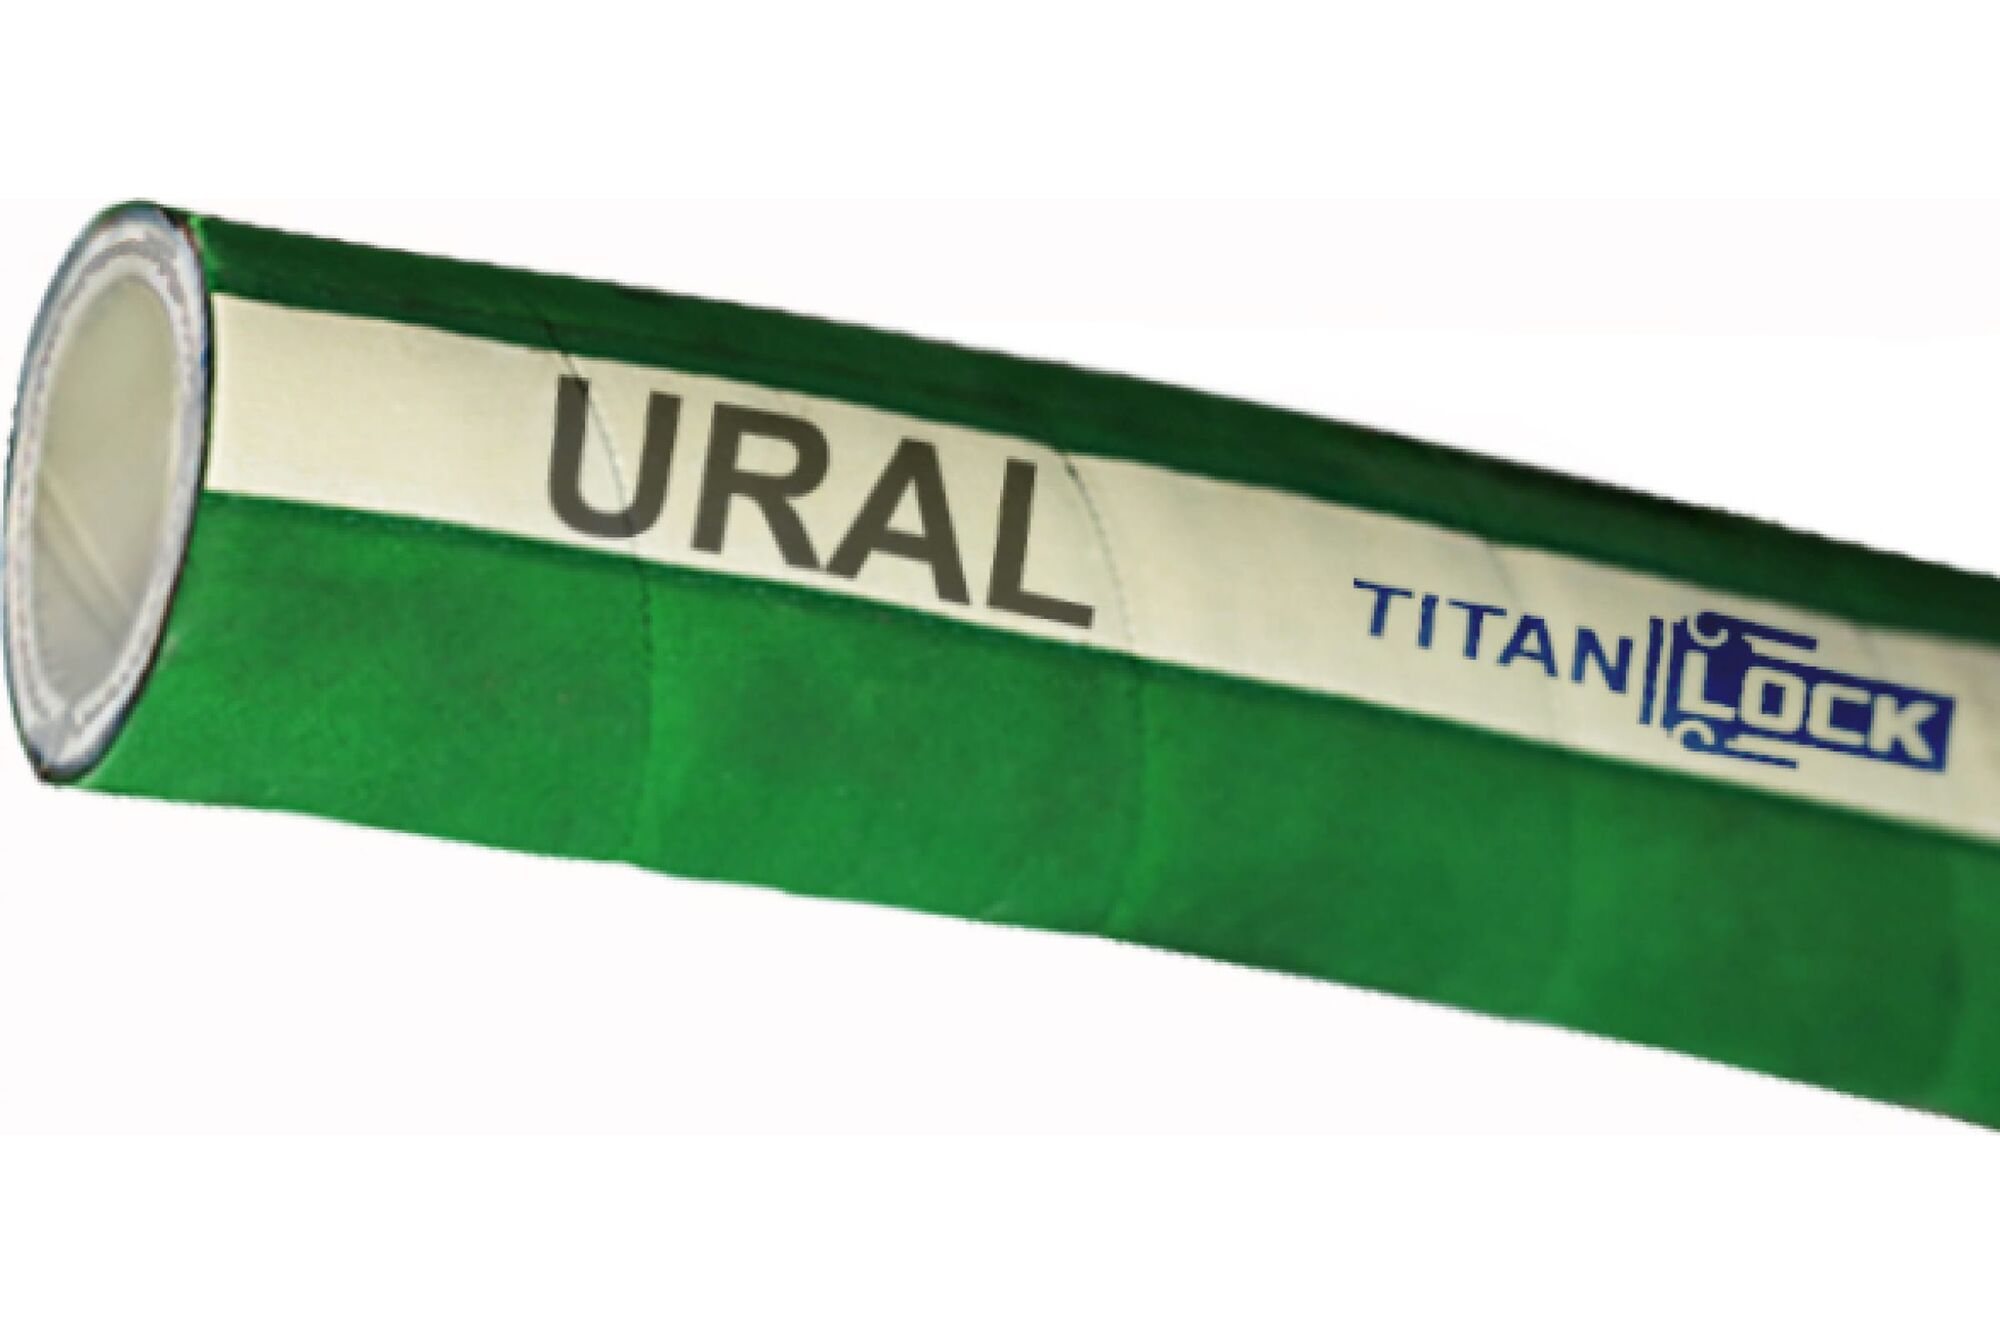 Химостойкий рукав «URAL», внутренний диаметр 32 мм, 16bar, 10 метров, UHMWPE, н/в TITAN LOCK TL032UR